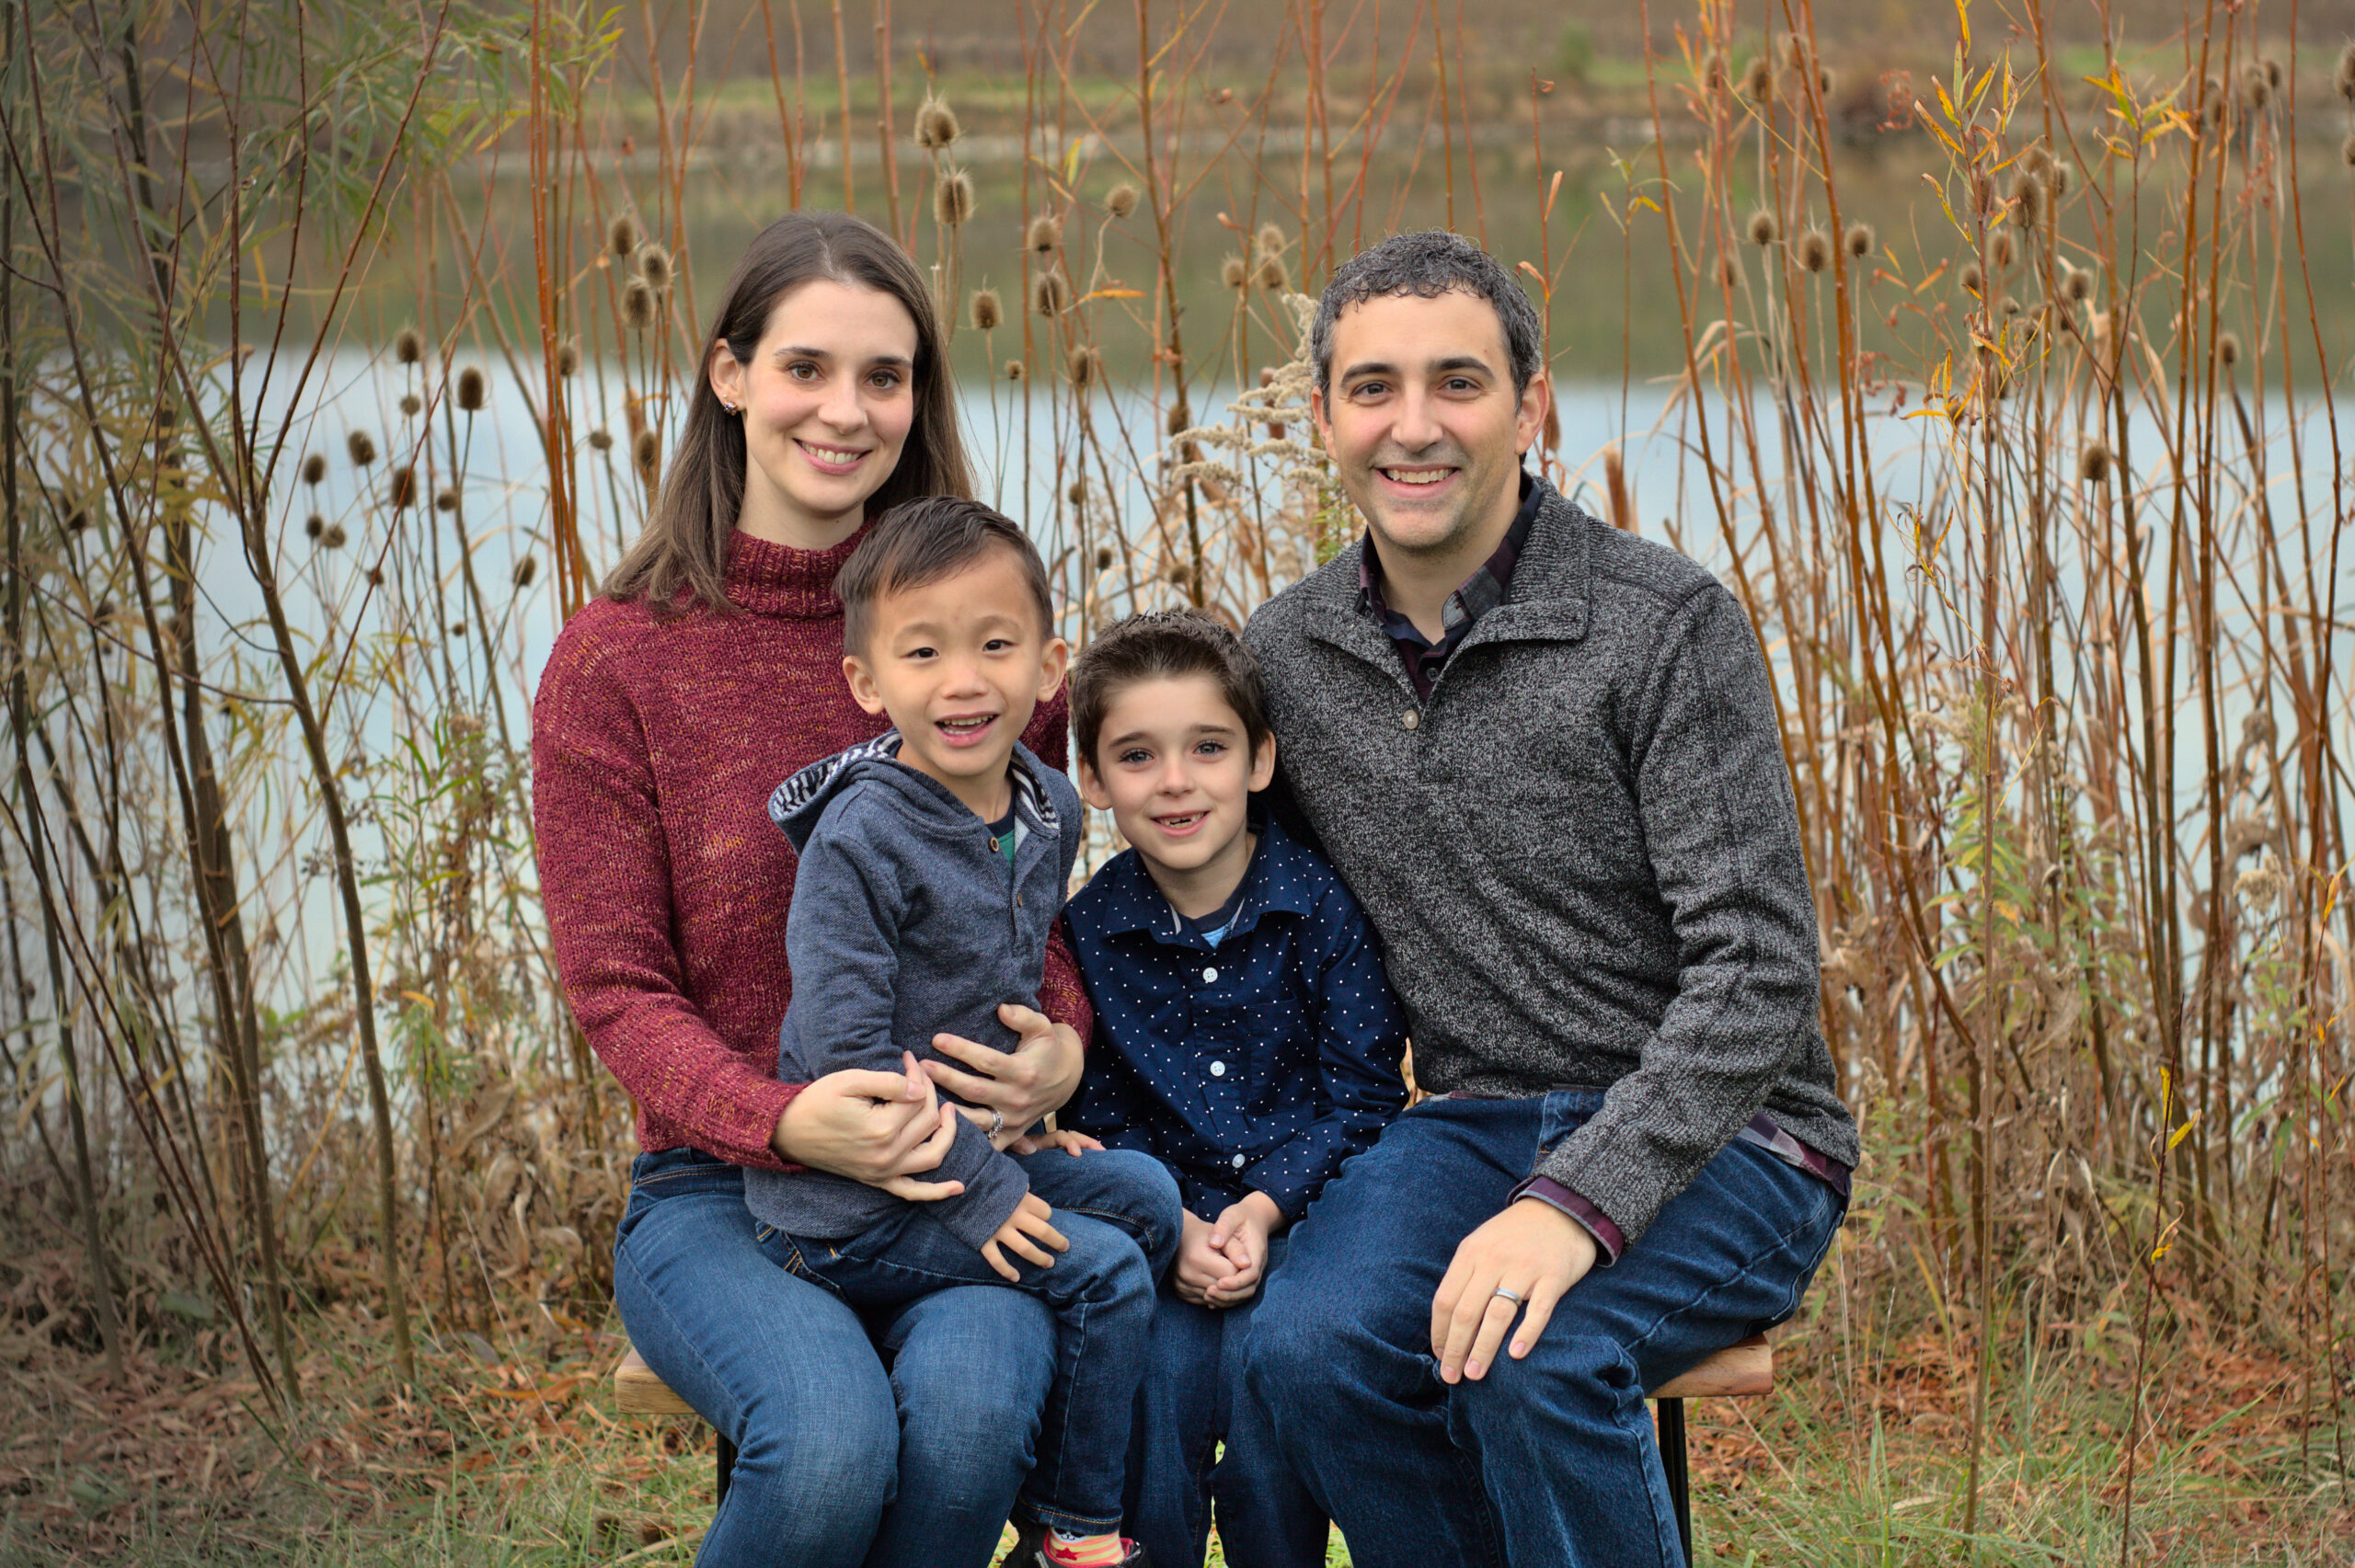 Pastor Dustin Battles' family